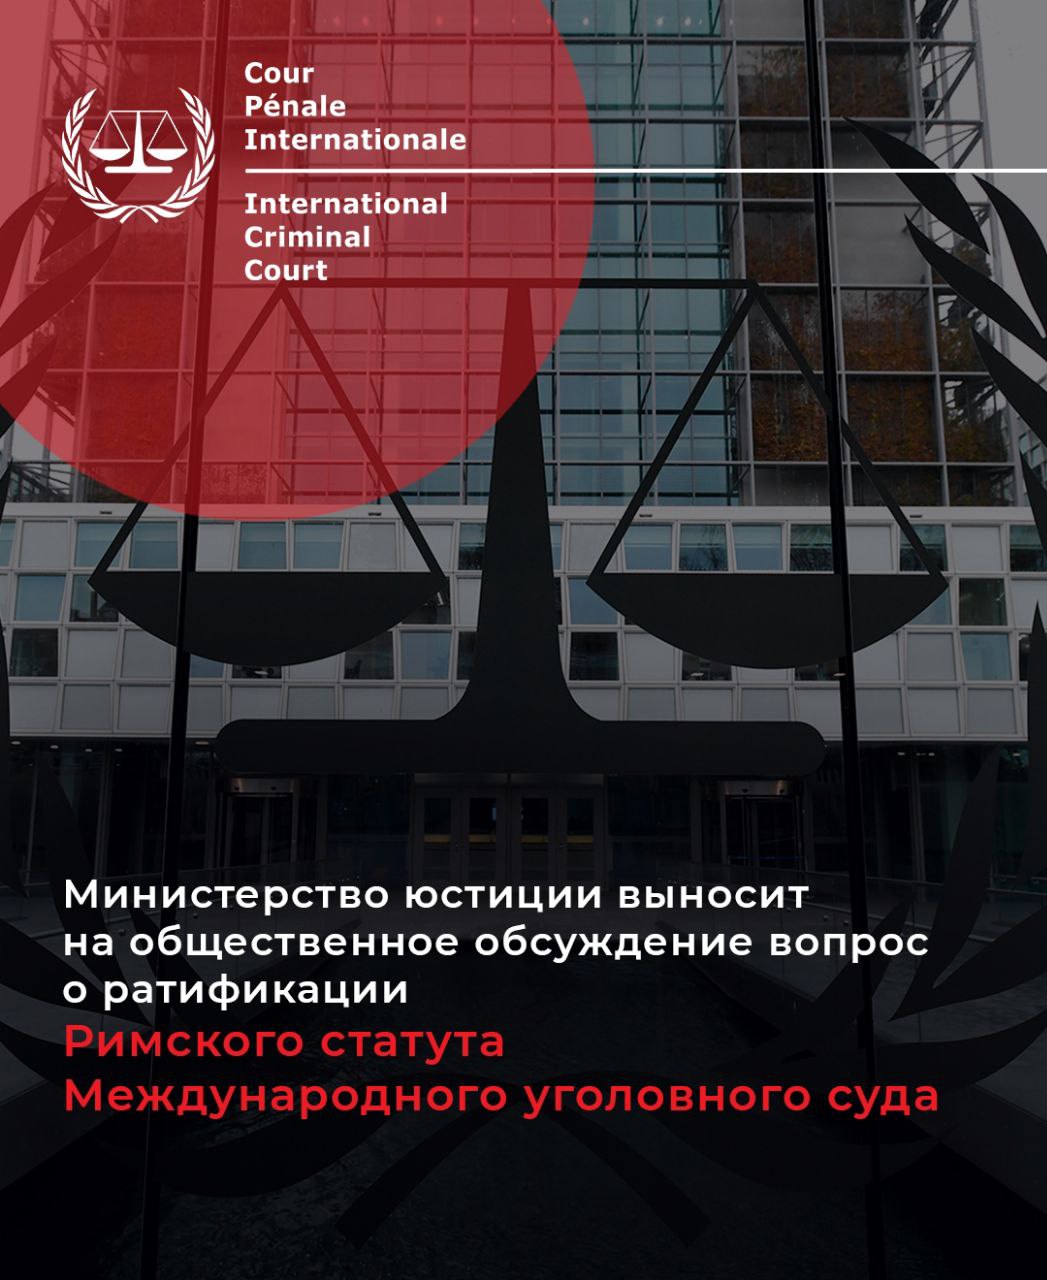 Министерство юстиции выносит на общественное обсуждение вопрос о ратификации Римского статута Международного уголовного суда